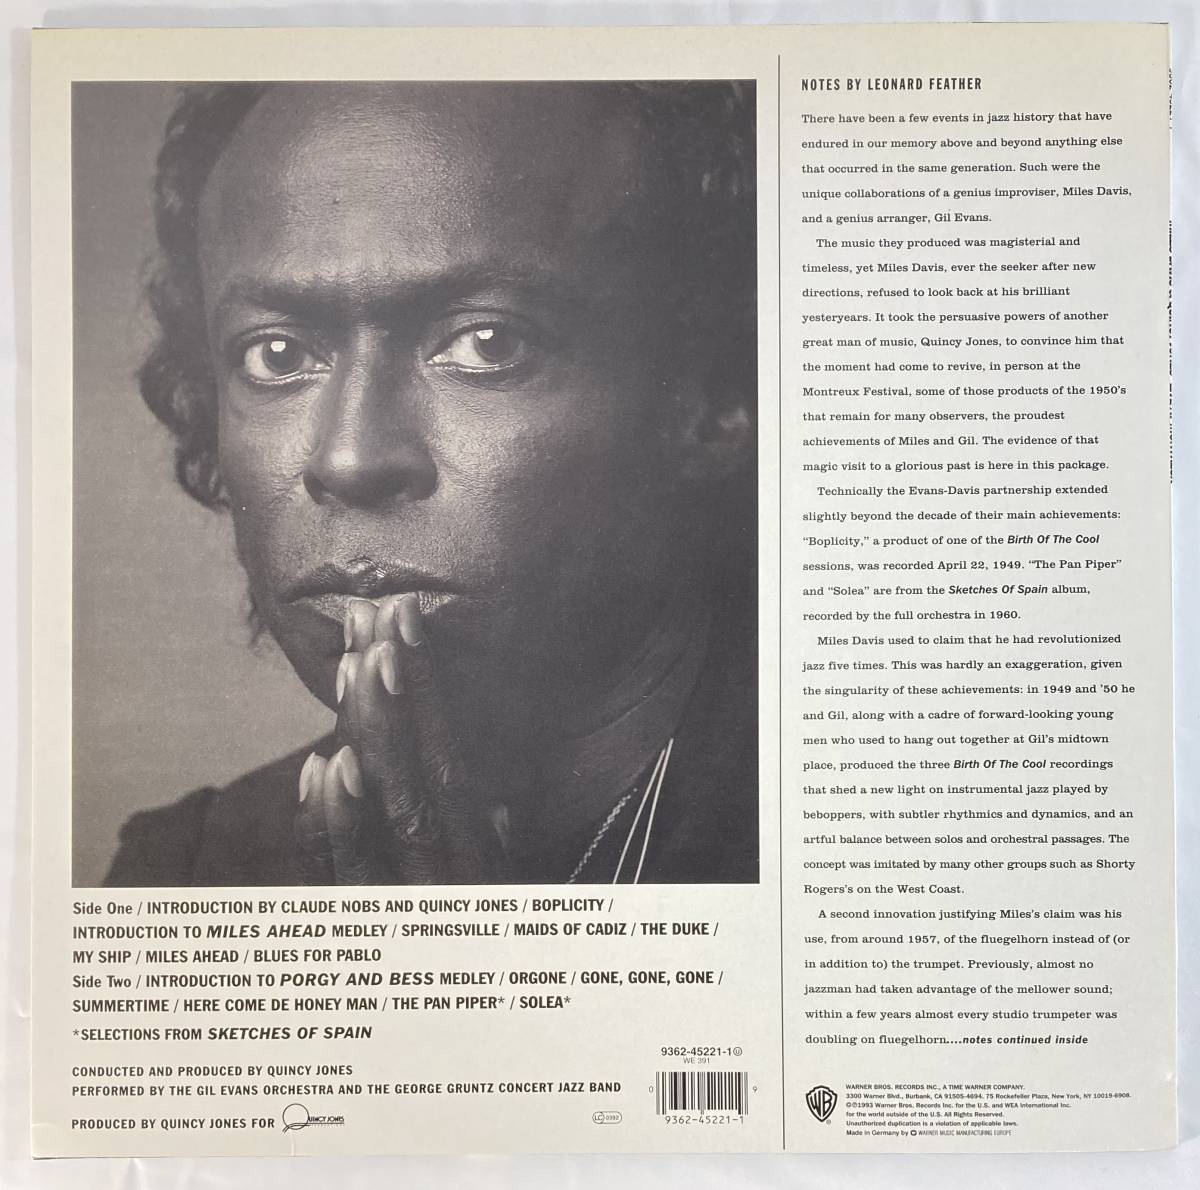 マイルス・デイヴィス (Miles Davis),クインシー・ジョーンズ (Quincy Jones) / Live At Montreux 独盤LP WEA 9362-45221-1_画像2